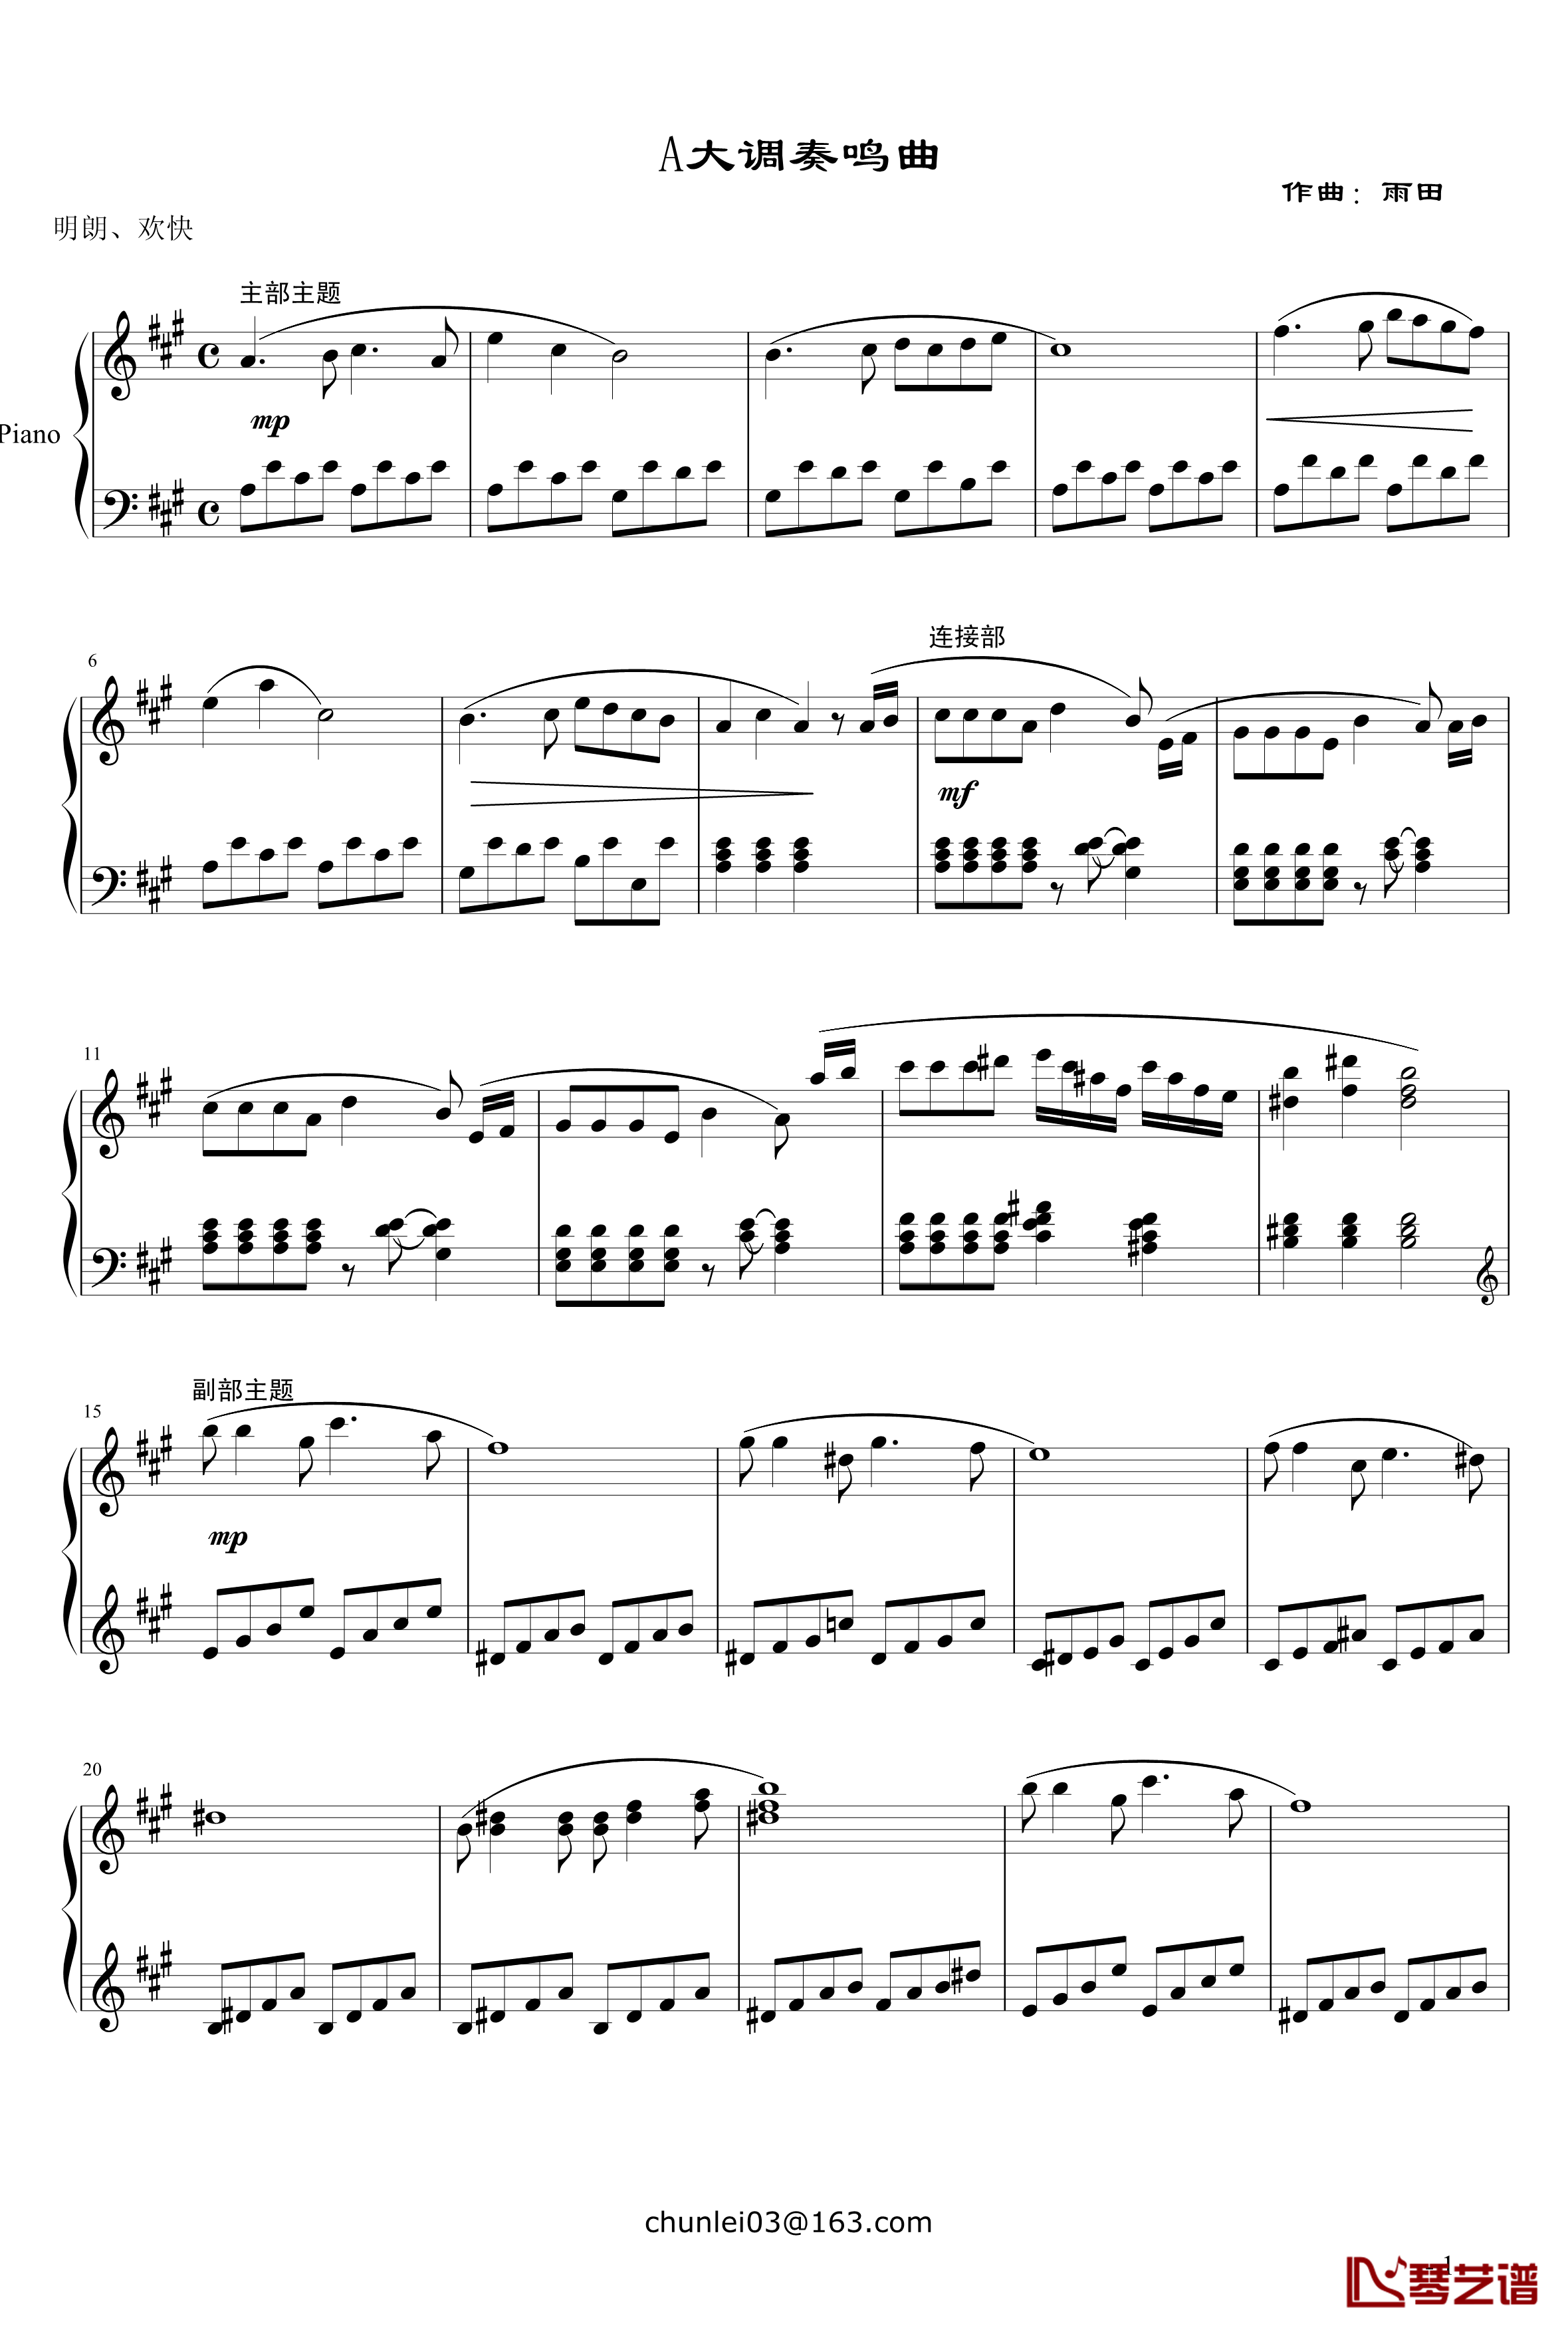 A大调钢琴奏鸣曲钢琴谱-雨田1